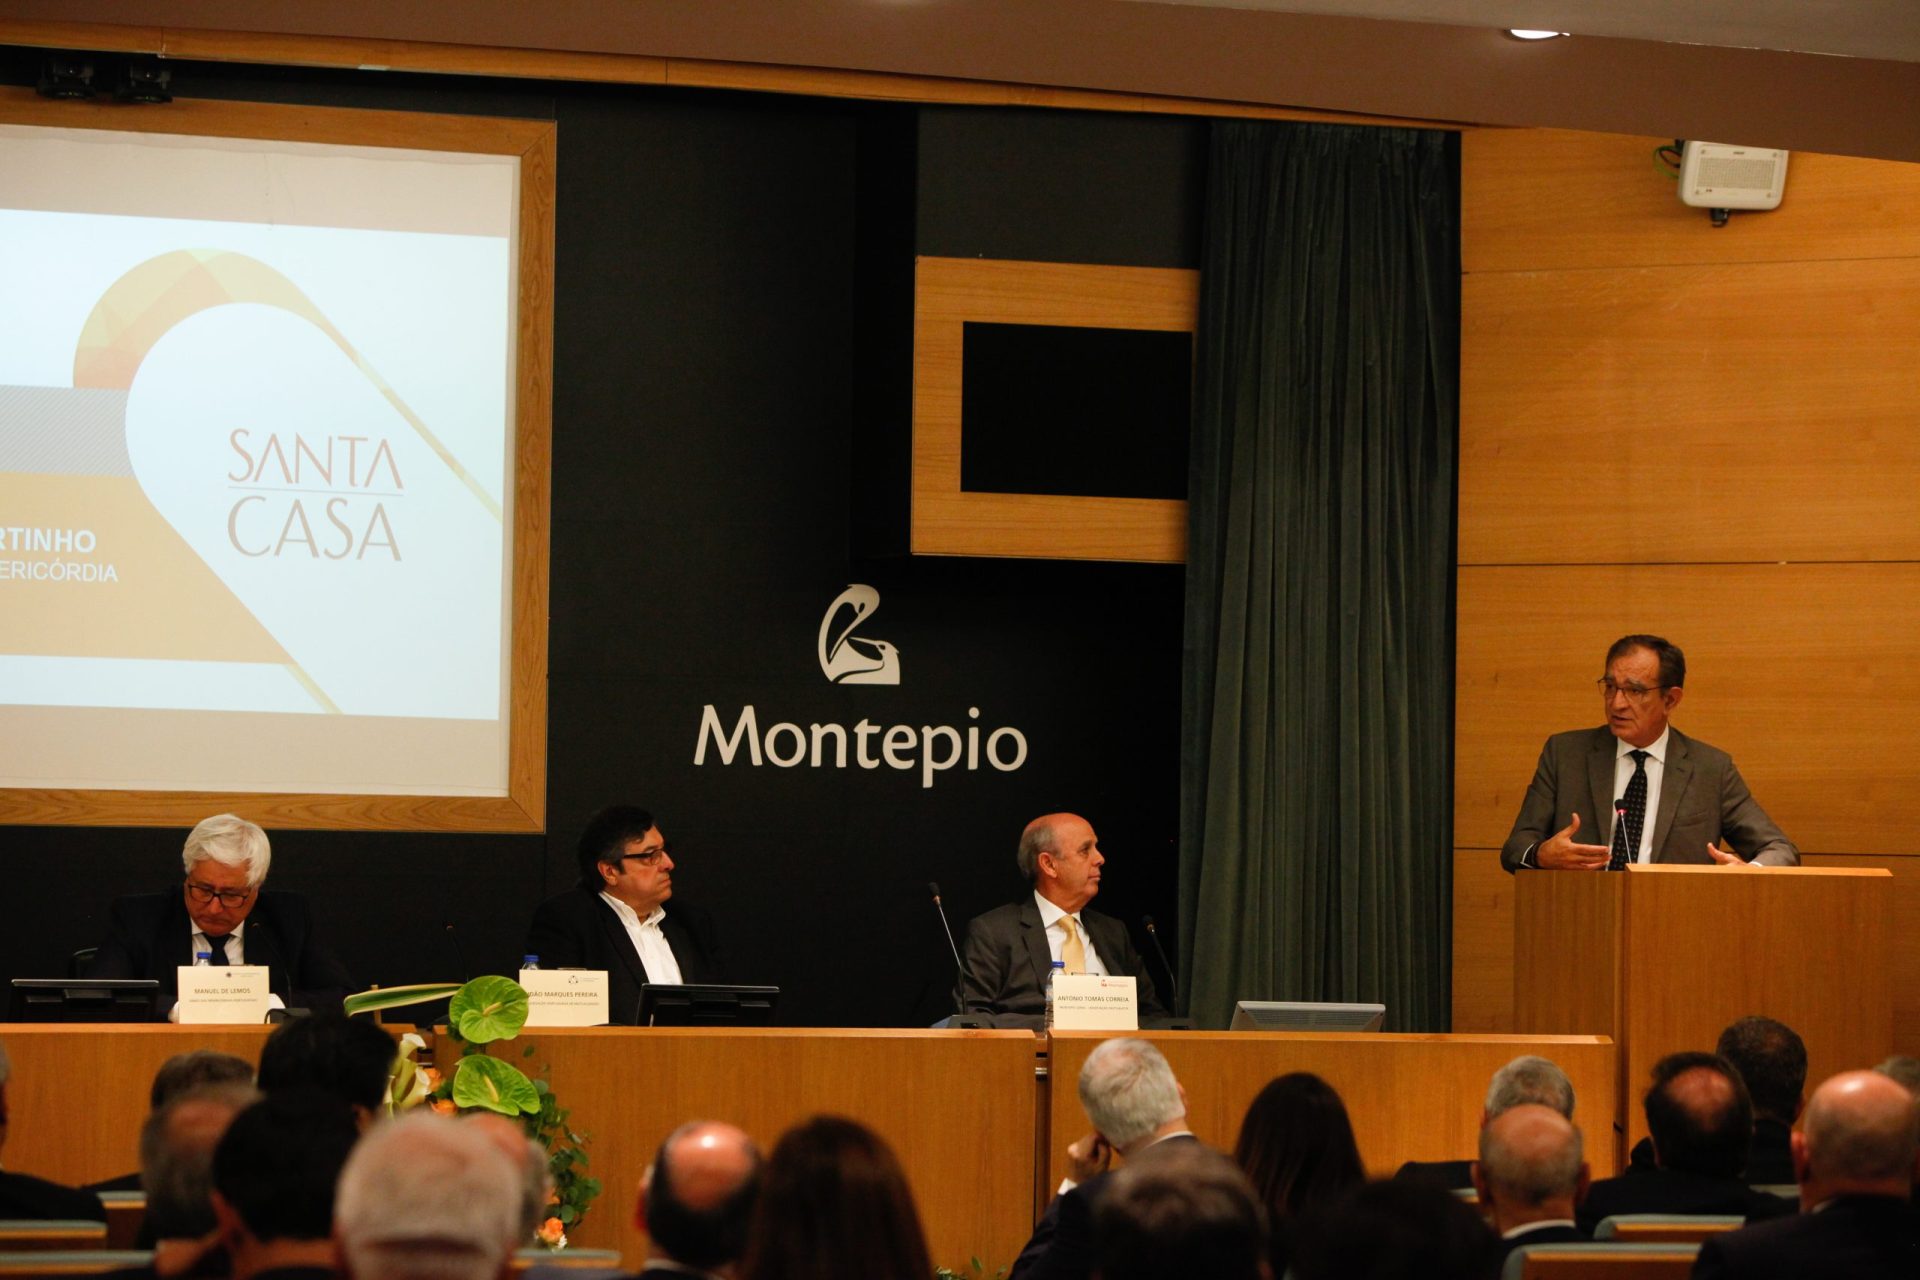 Banco Montepio passa de prejuízos a lucros de 6,6 milhões em 2021